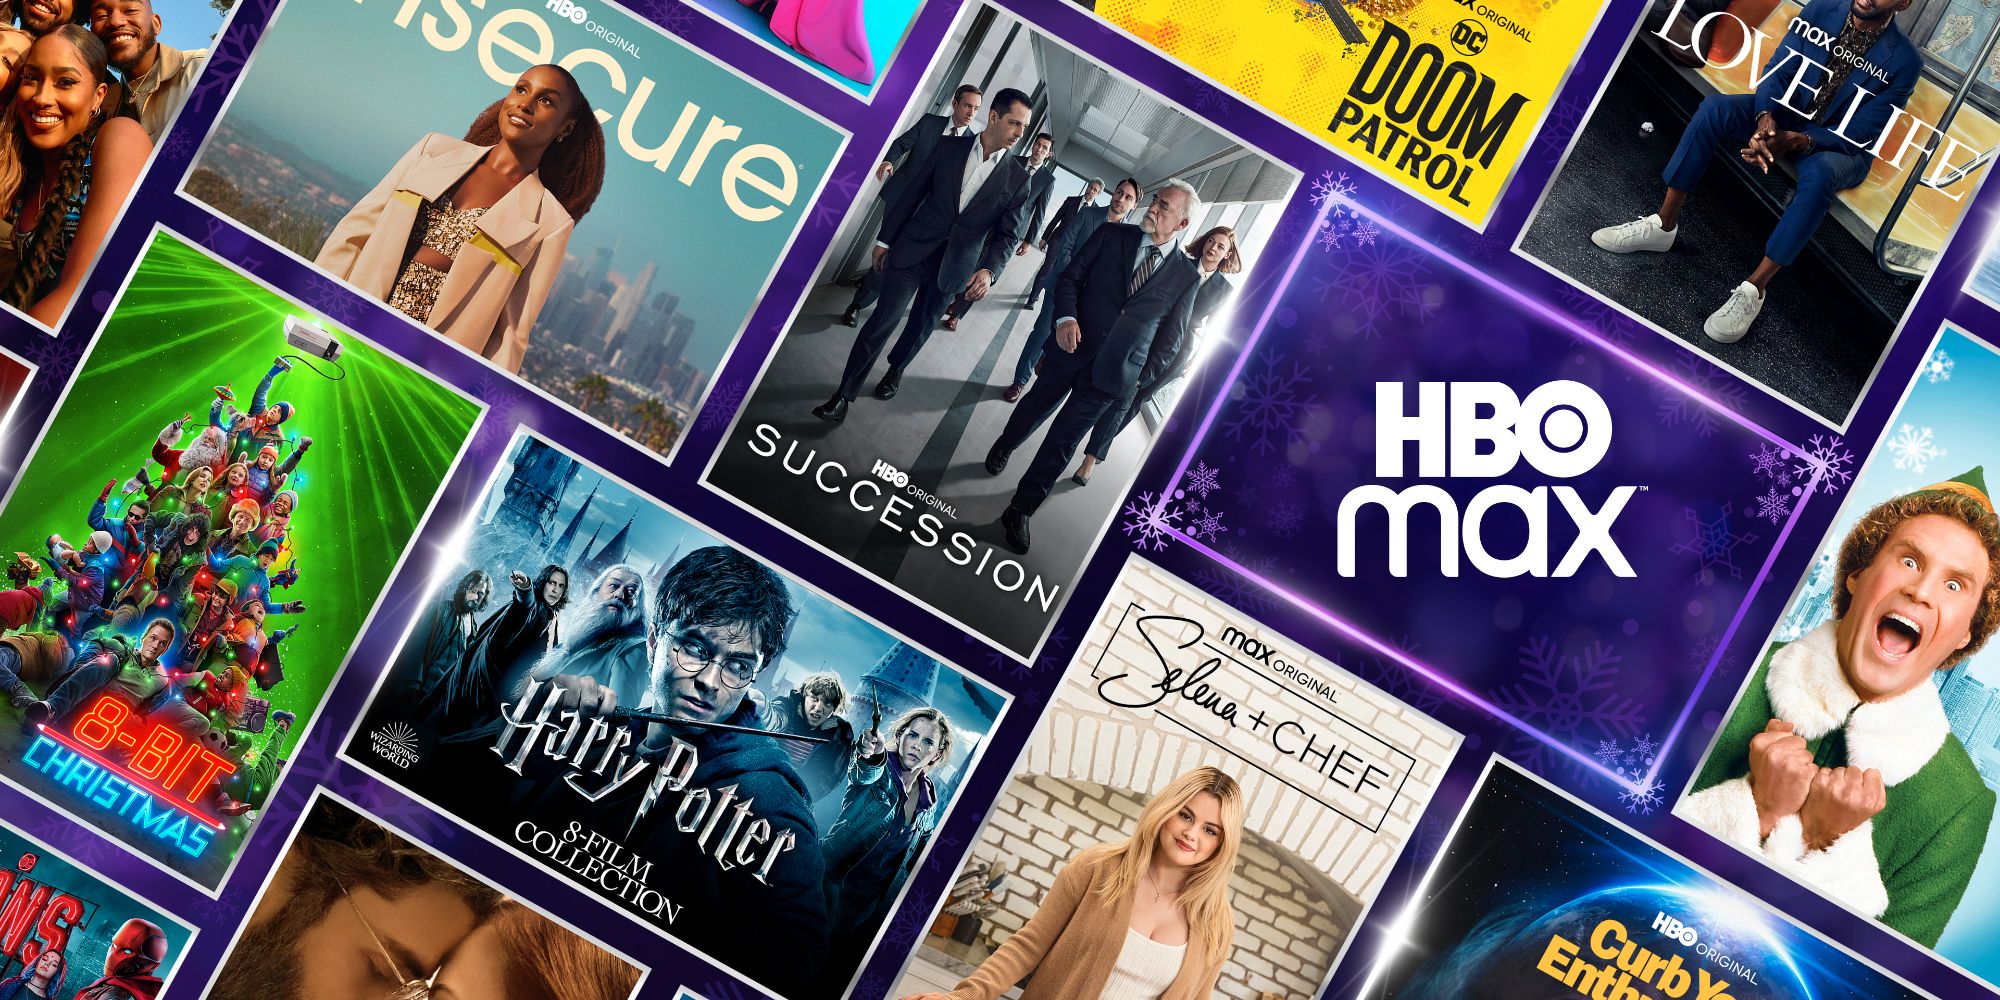 HBO Max agrega un nuevo botón aleatorio que muestra episodios aleatorios de programas